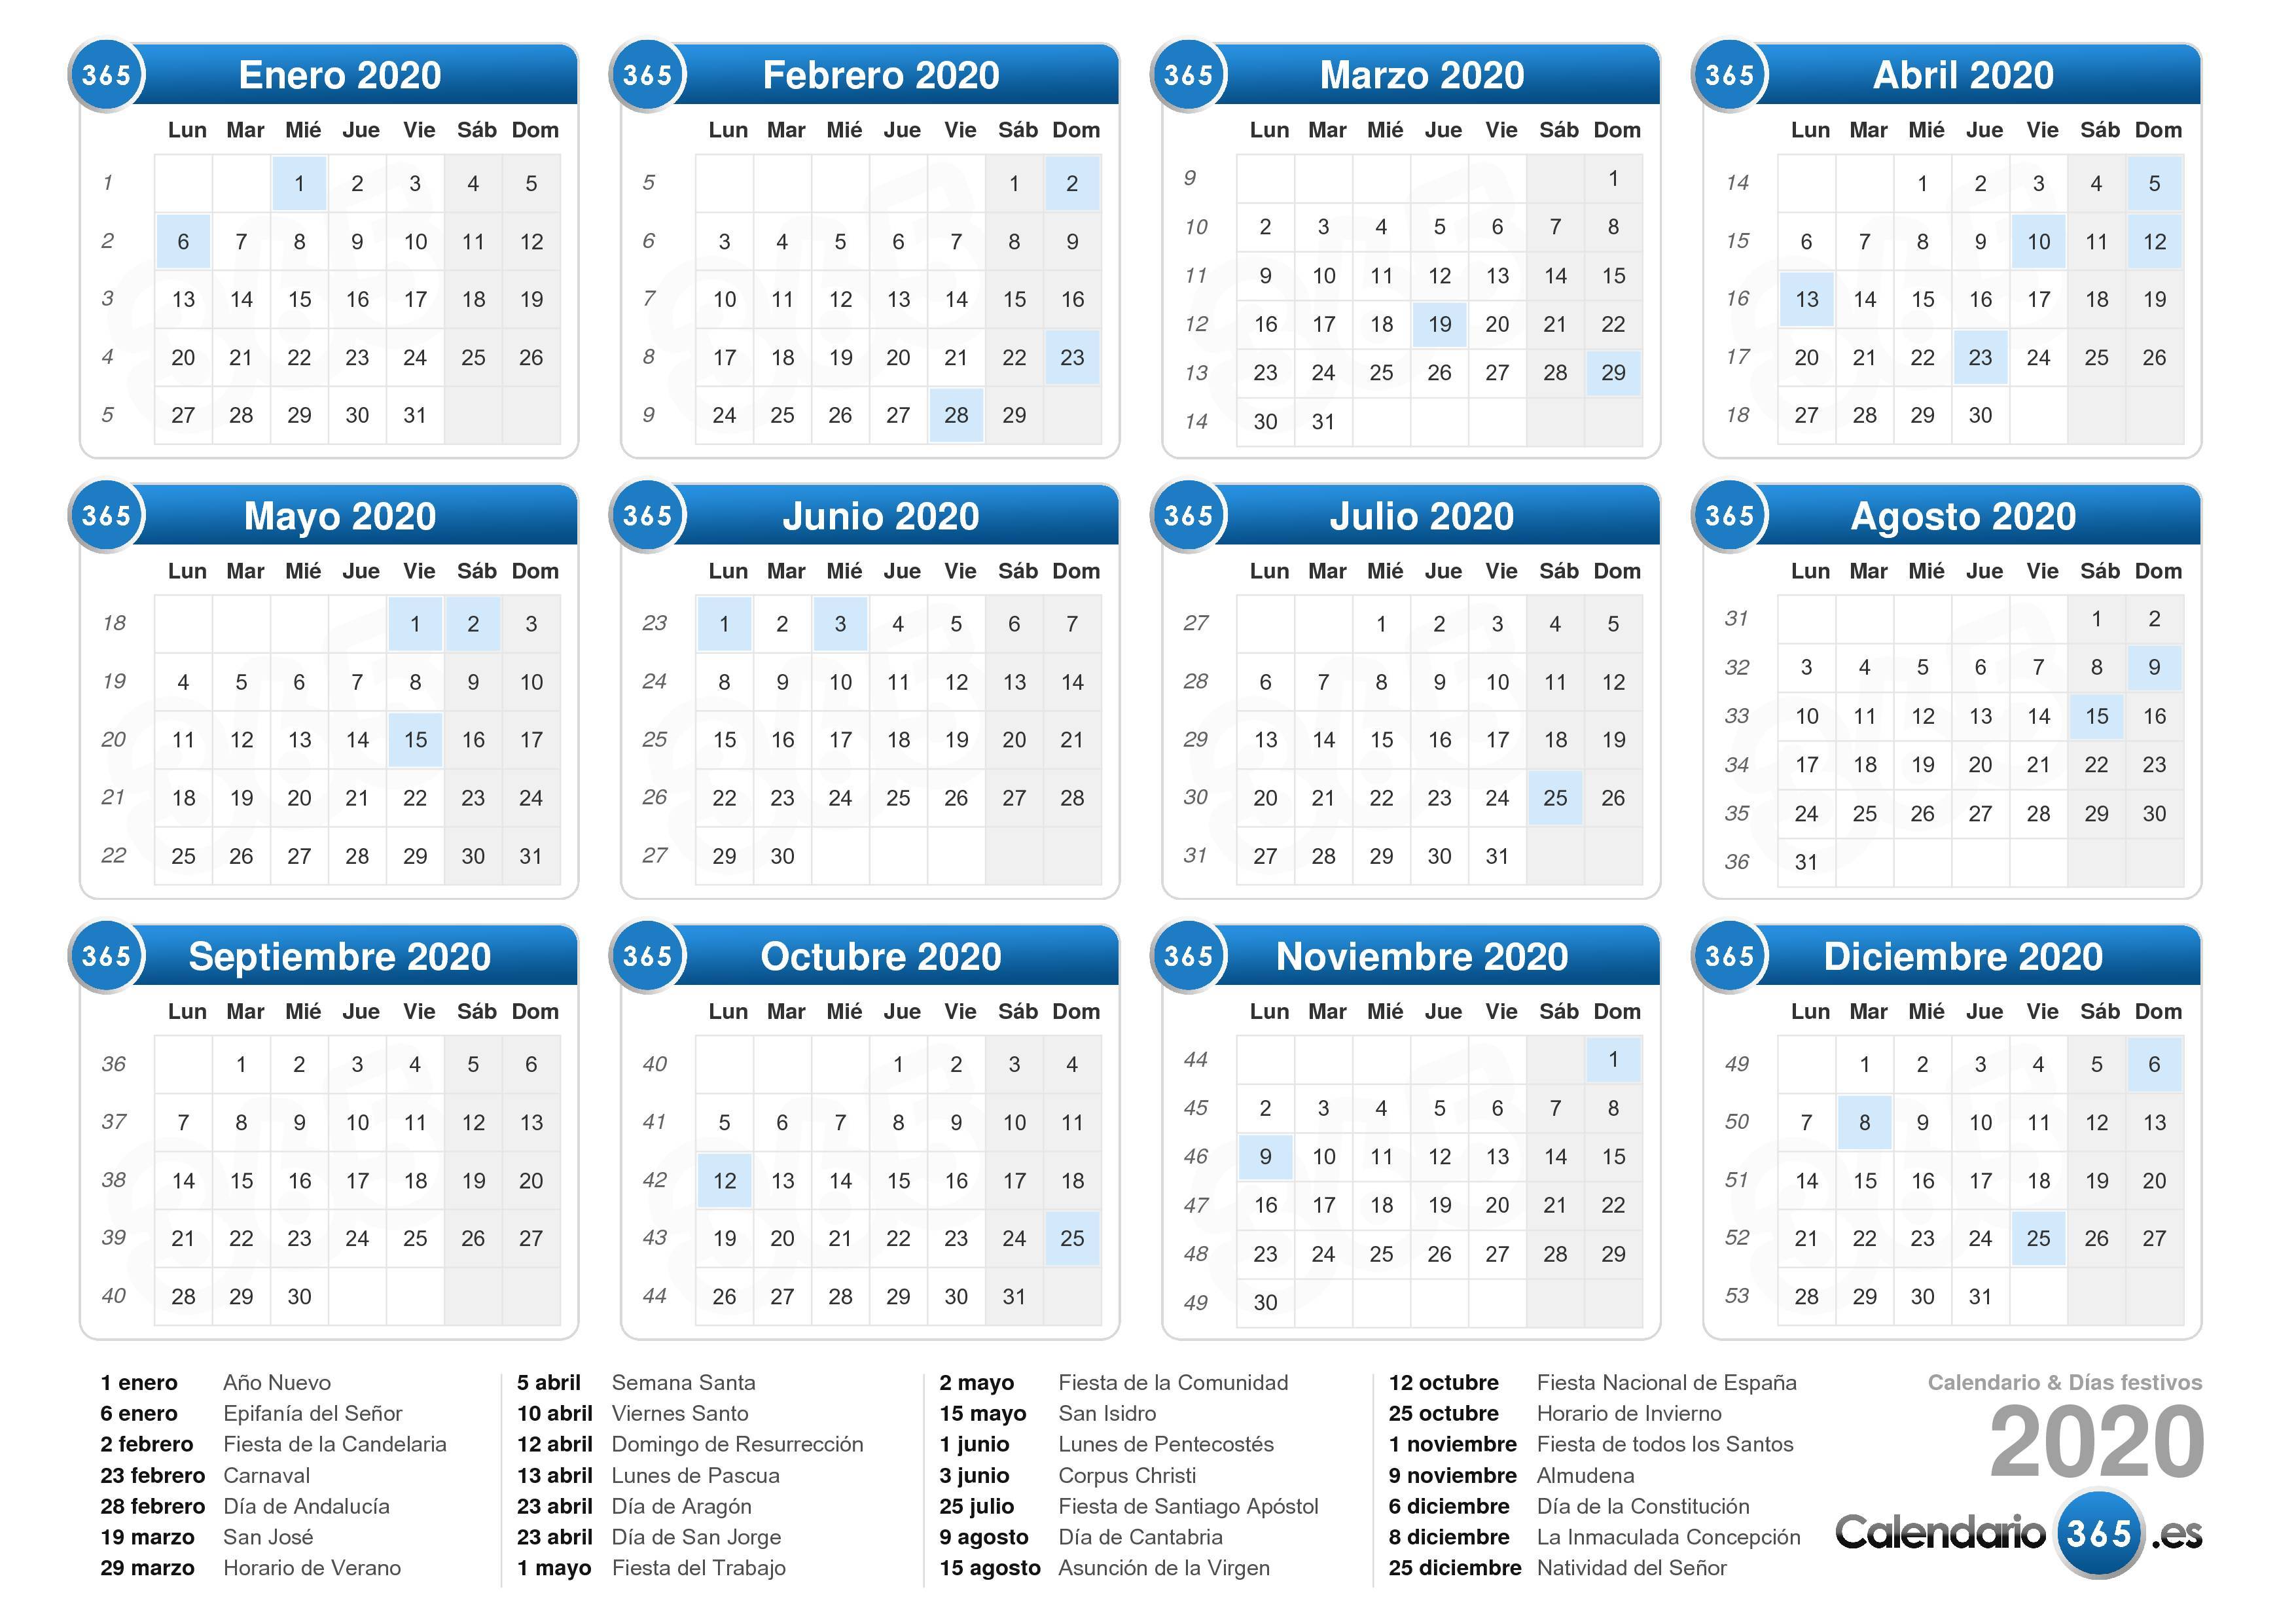 El calendario laboral de 2020 recoge 8 festivos comunes en toda España 4